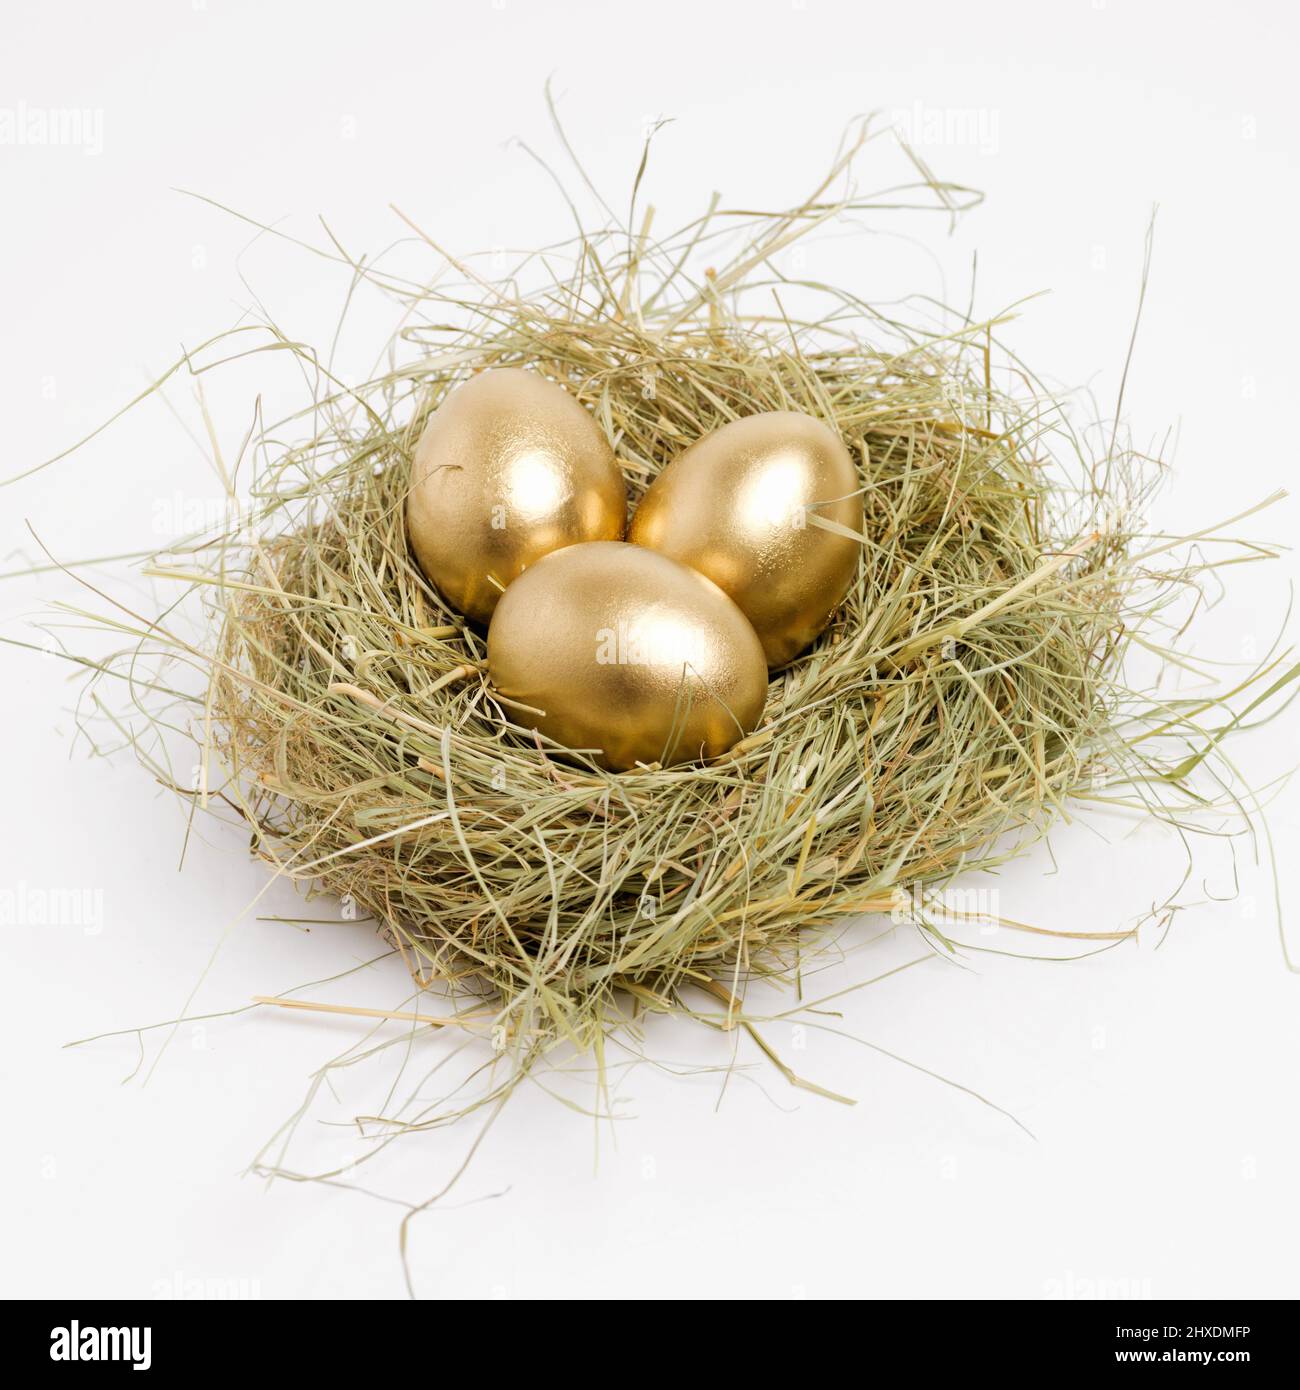 Assicurati di risparmiare oggi per un nido d'uovo d'oro. Scatto di studio di una frizione di uova d'oro che posano in un nido. Foto Stock